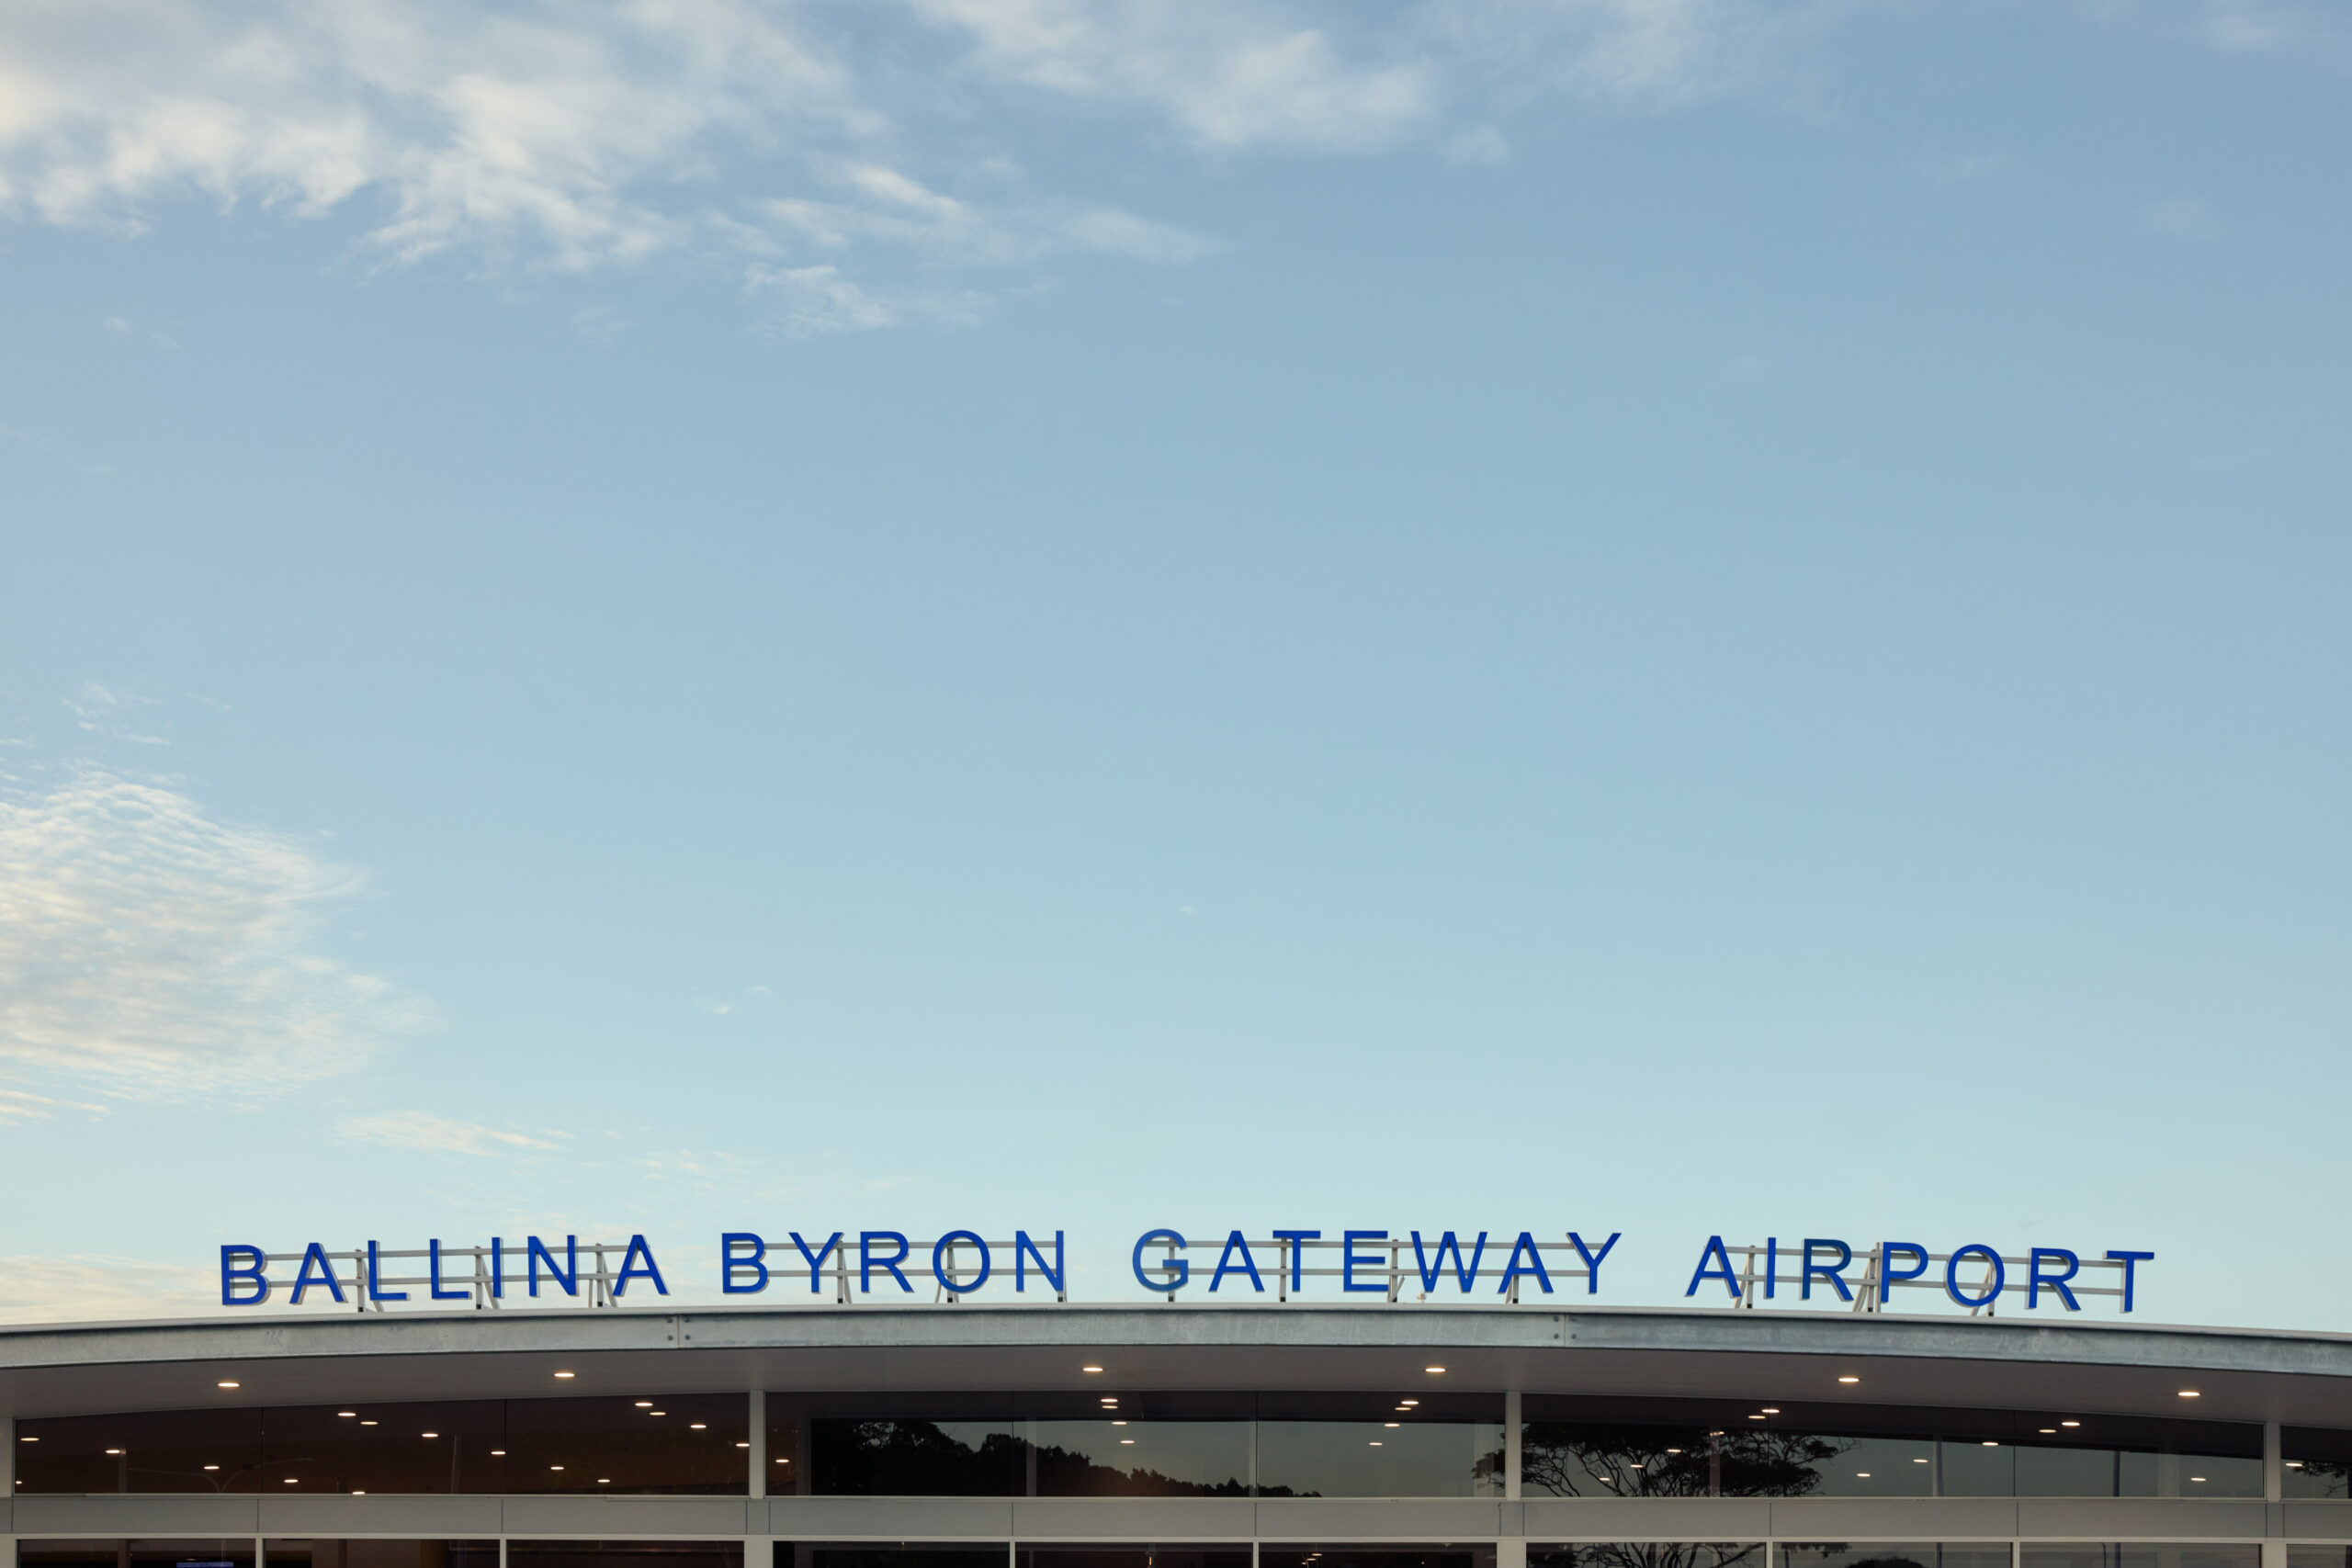 Ballina Airport